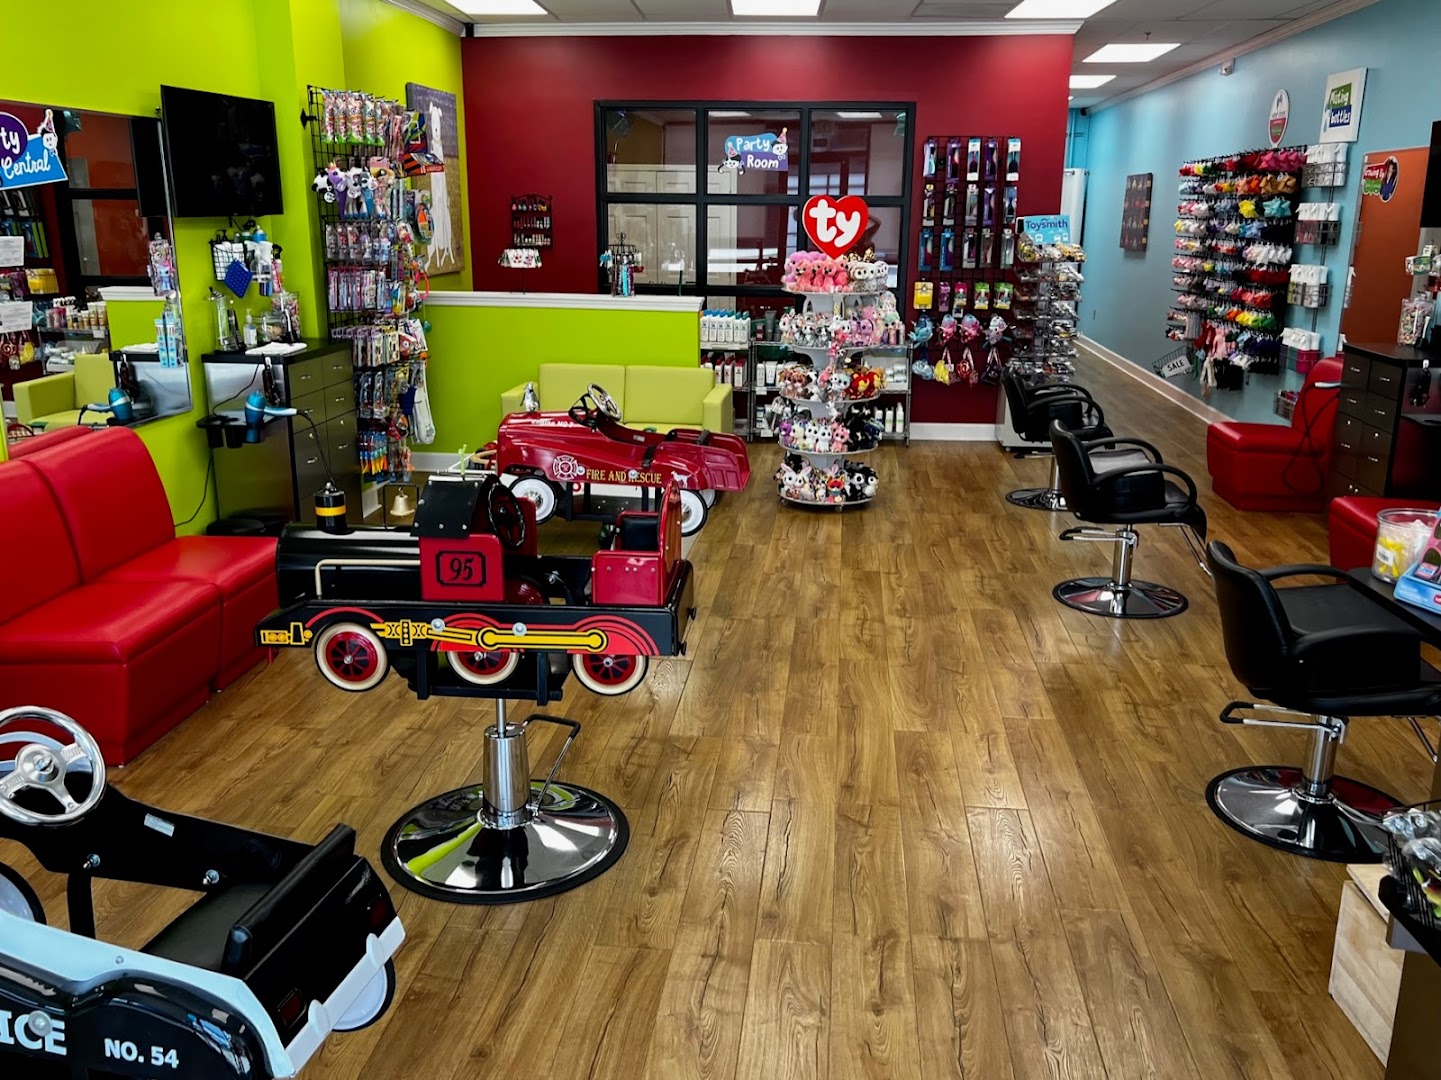 Pigtails & Crewcuts: Haircuts for Kids - Birmingham - Vestavia Hills, AL